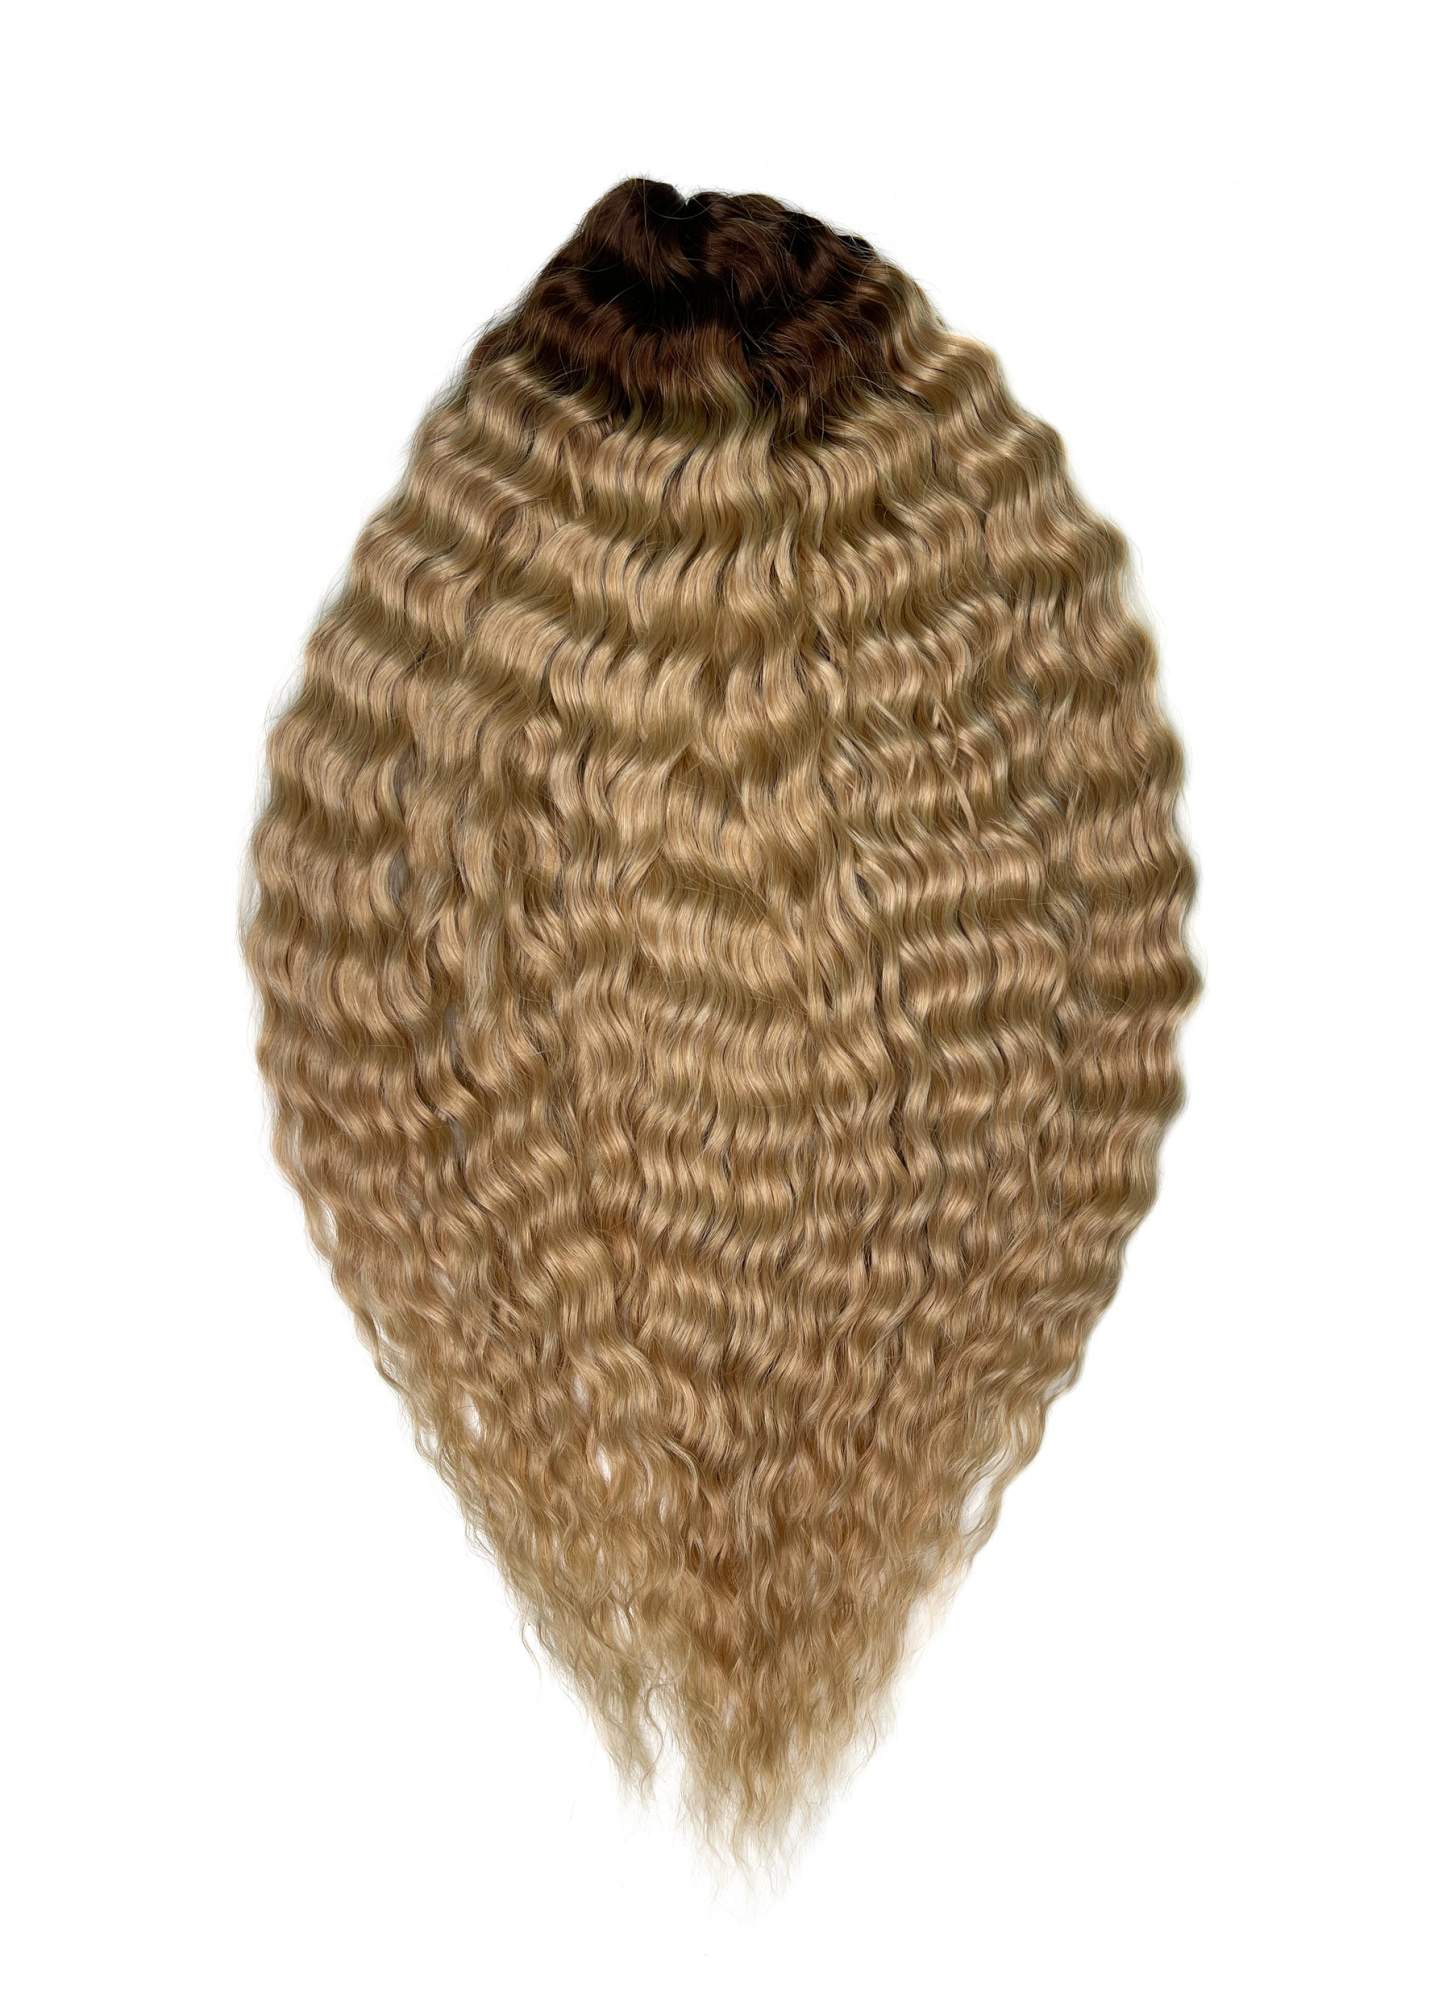 Афрокудри для плетения волос Ariel цвет TT-linen 55 русый длина 55см вес 300г афрокудри для плетения волос ariel t16 613 светло русый длина 55см вес 300г